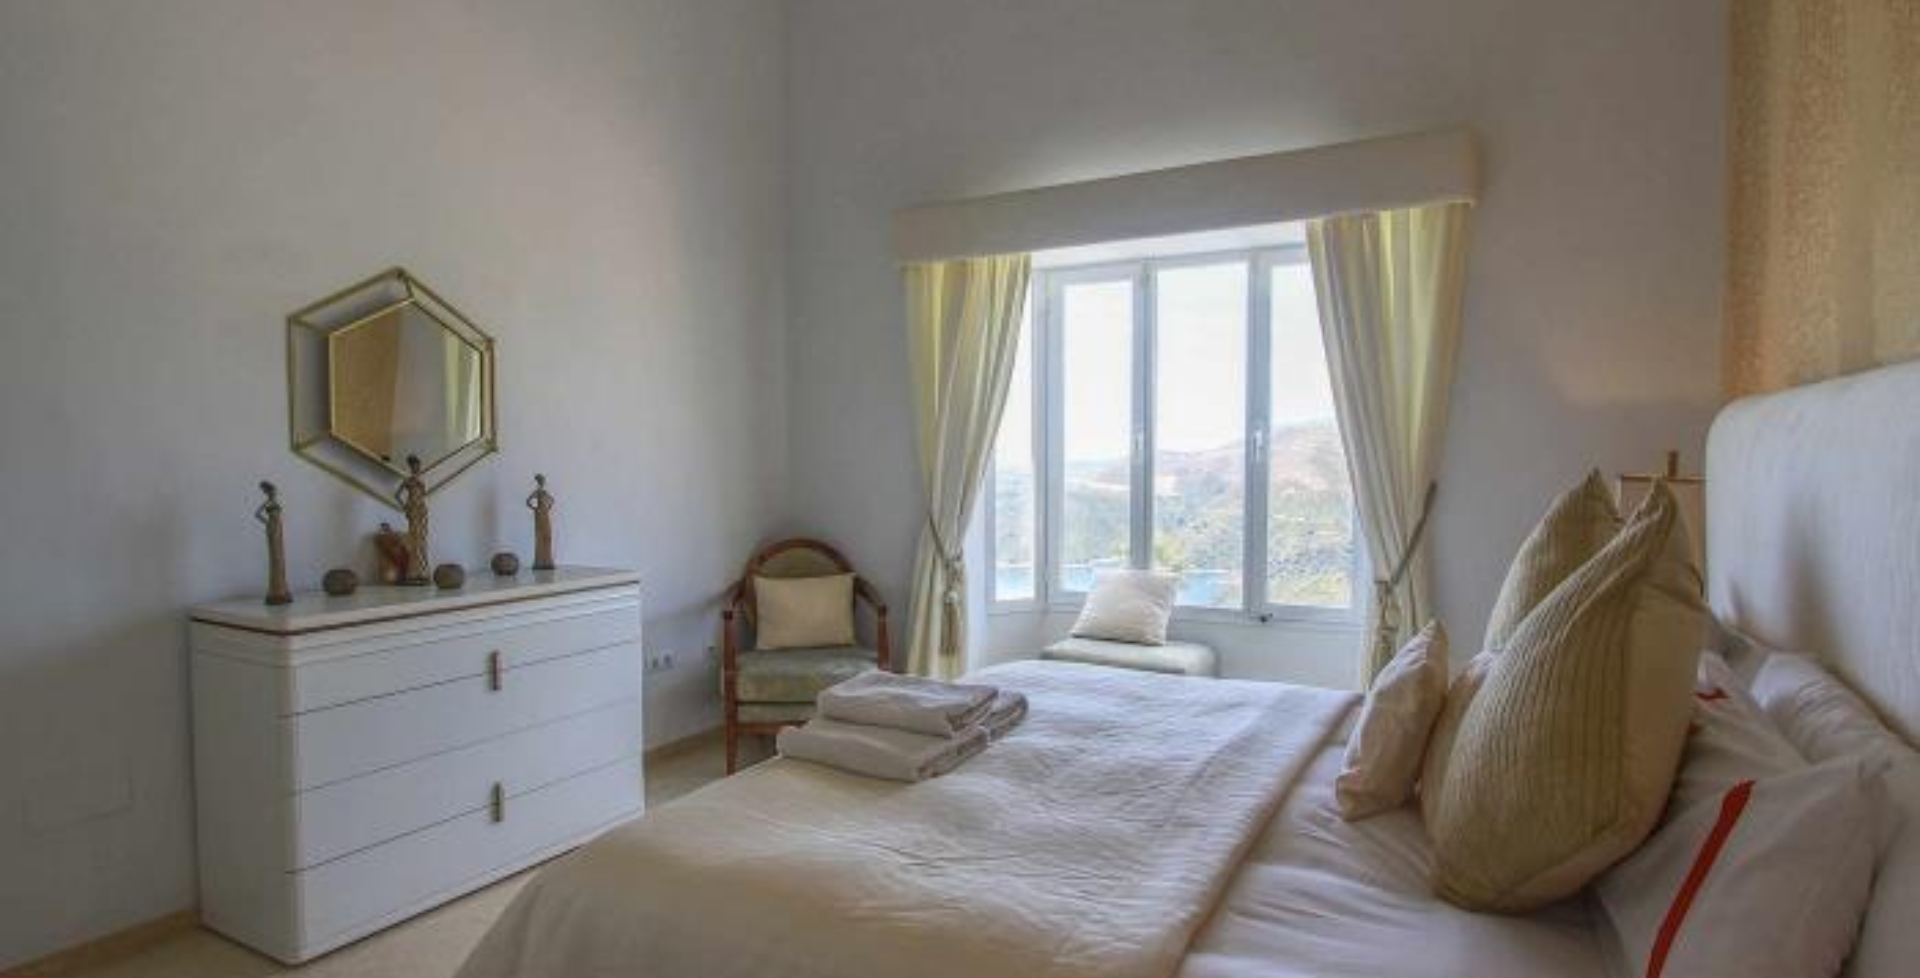 Marbella family villa 3 bedrooms bedroom views